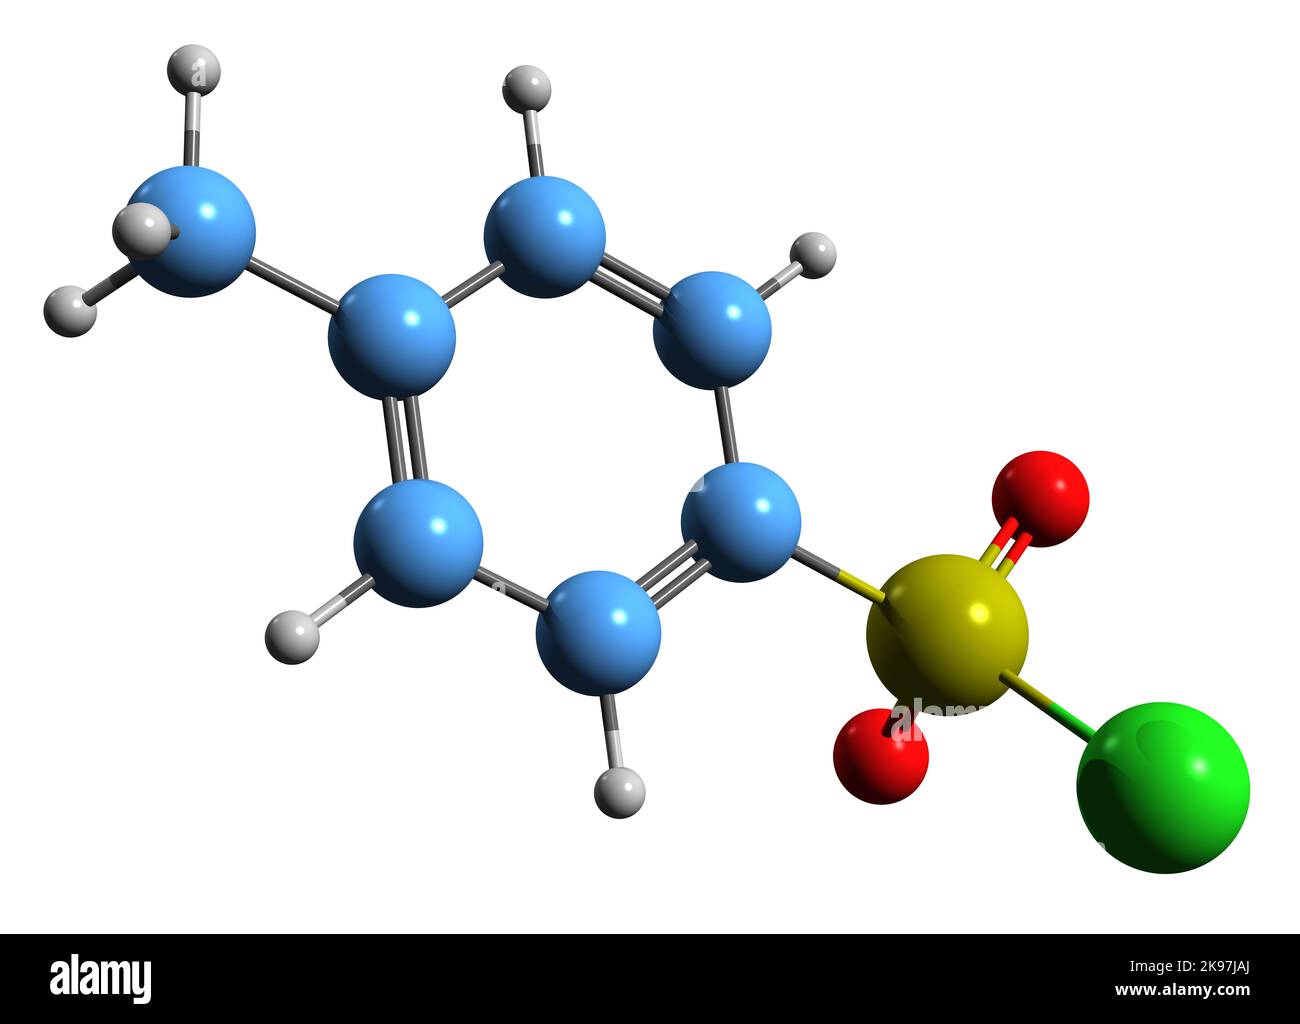 3D Bild der Skelettformel von Tosyl-Chlorid - molekulare chemische Struktur der organischen Verbindung Toluensulfonylchlorid auf weißem Hintergrund isoliert Stockfoto